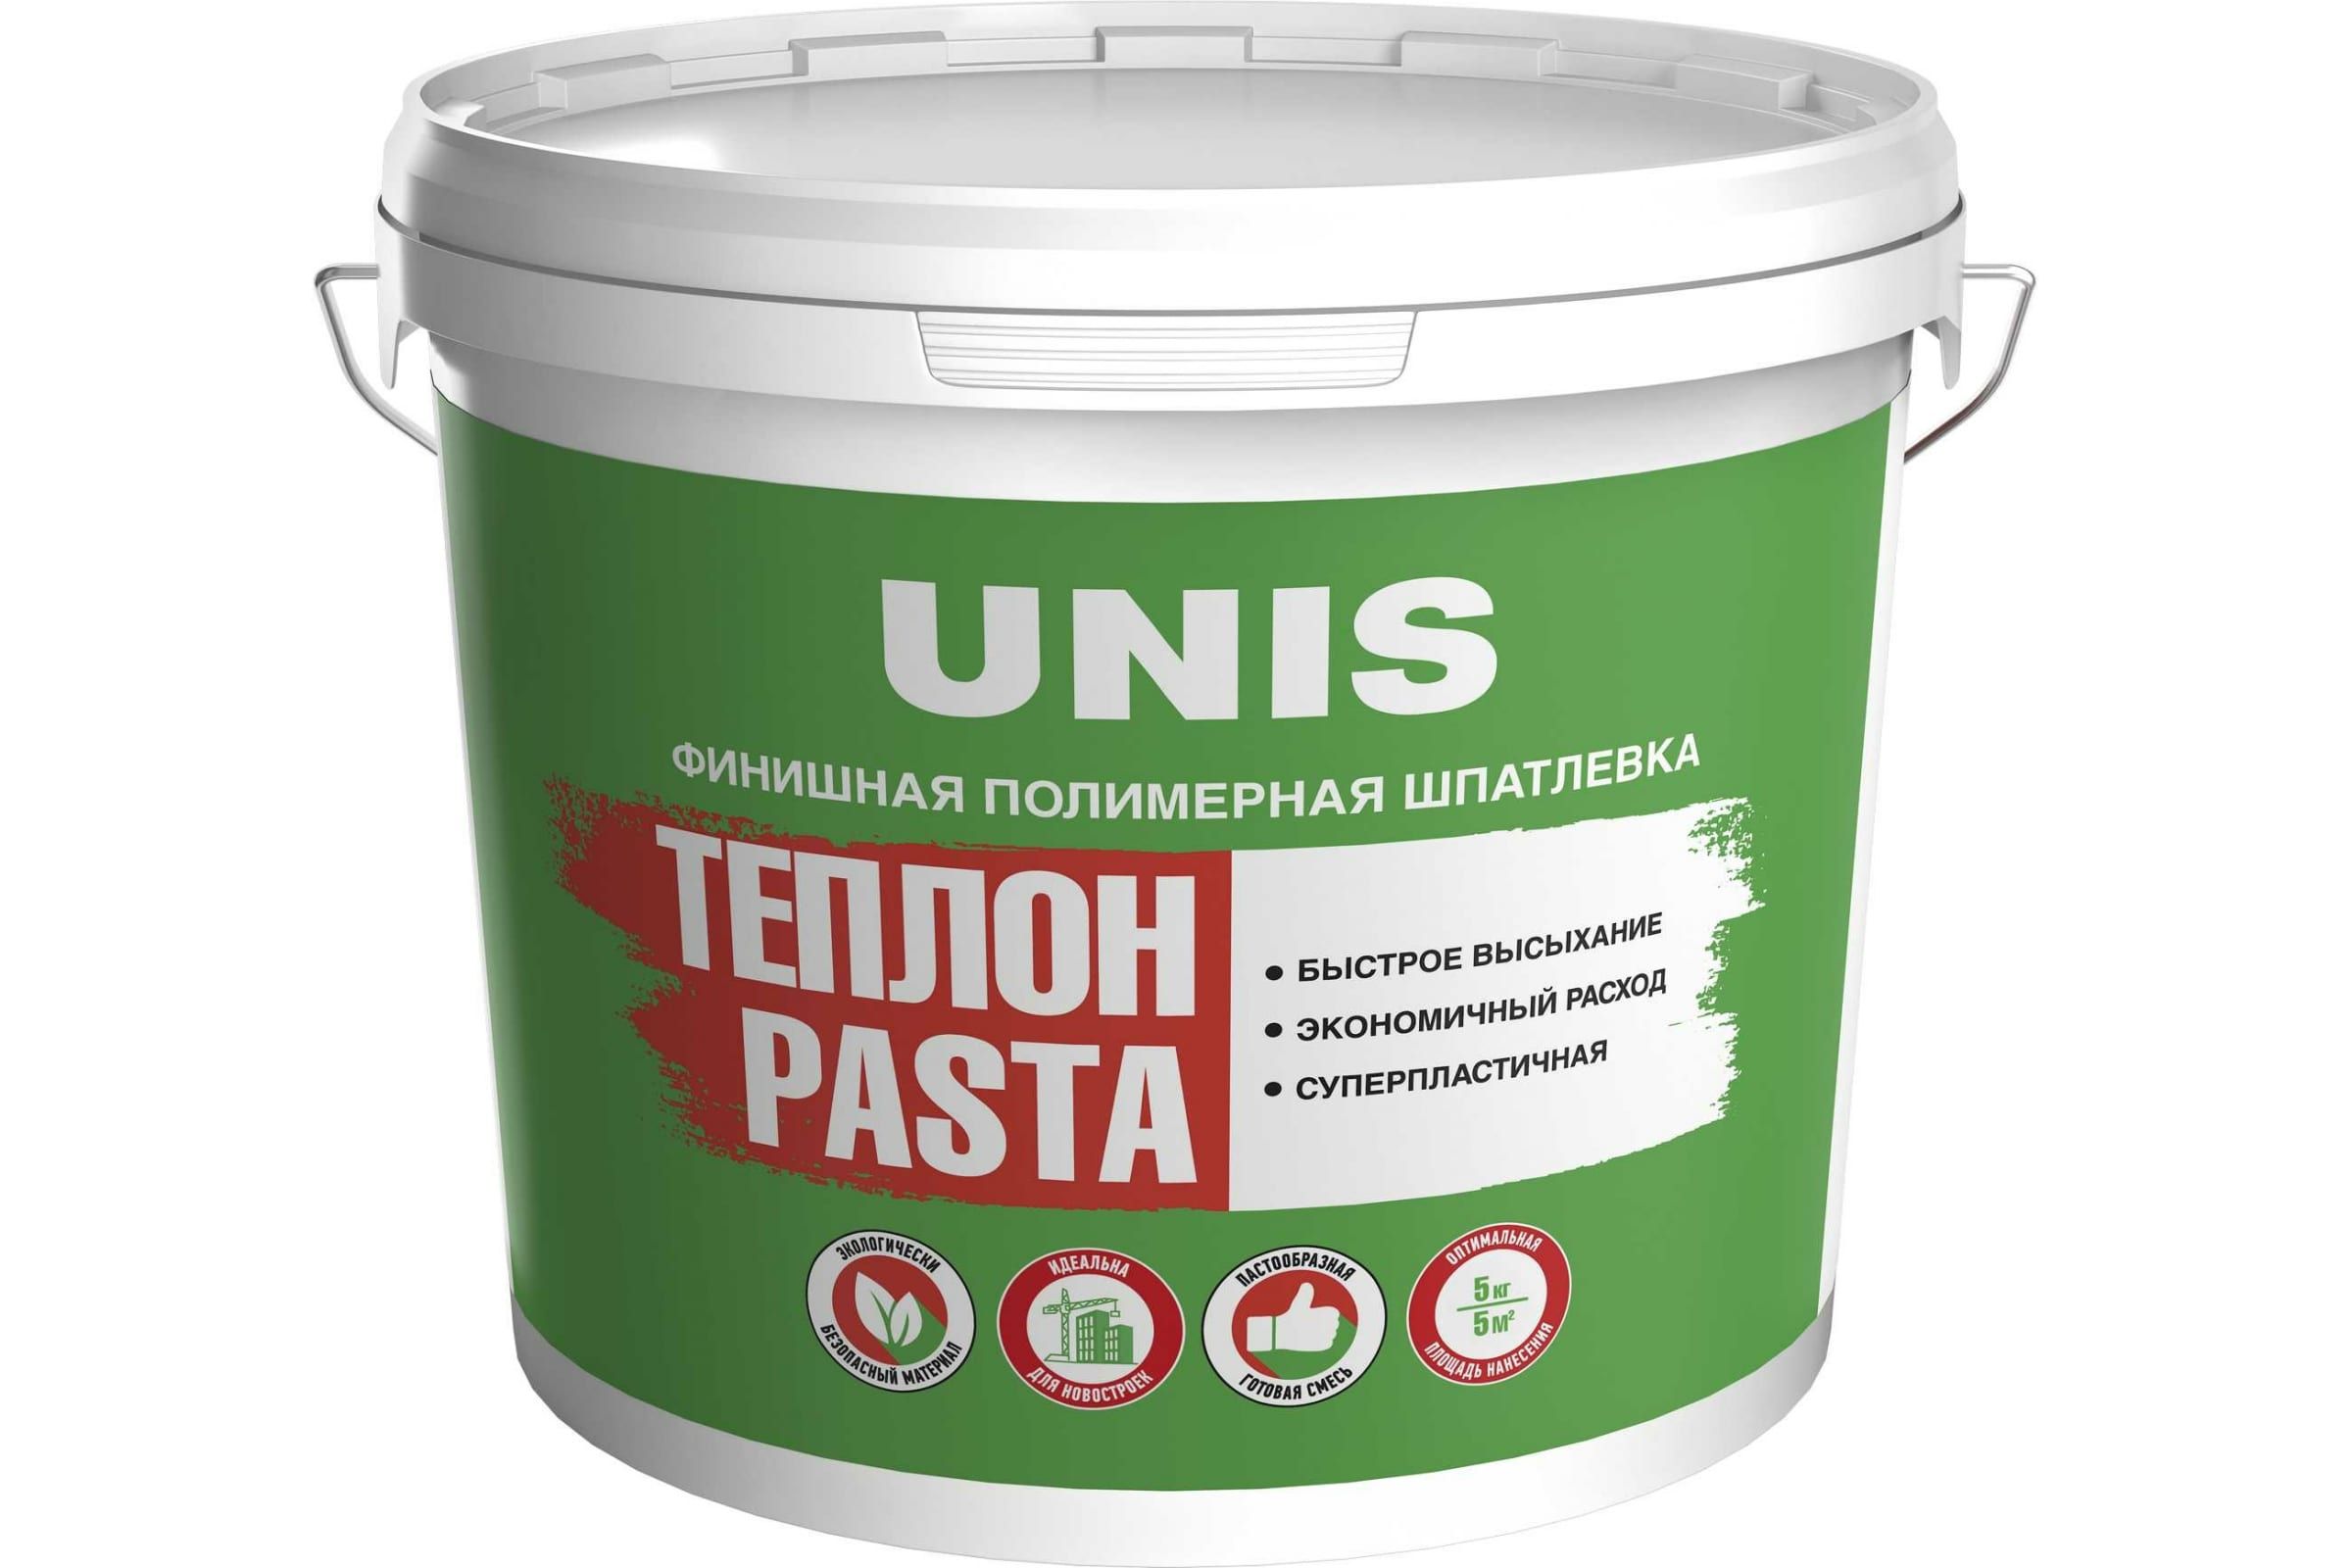 Шпатлевка UNIS Теплон Pasta полимерная, финишная, 5 кг 4607005184887 шпатлевка полимерная финишная unis теплон pasta 28 кг